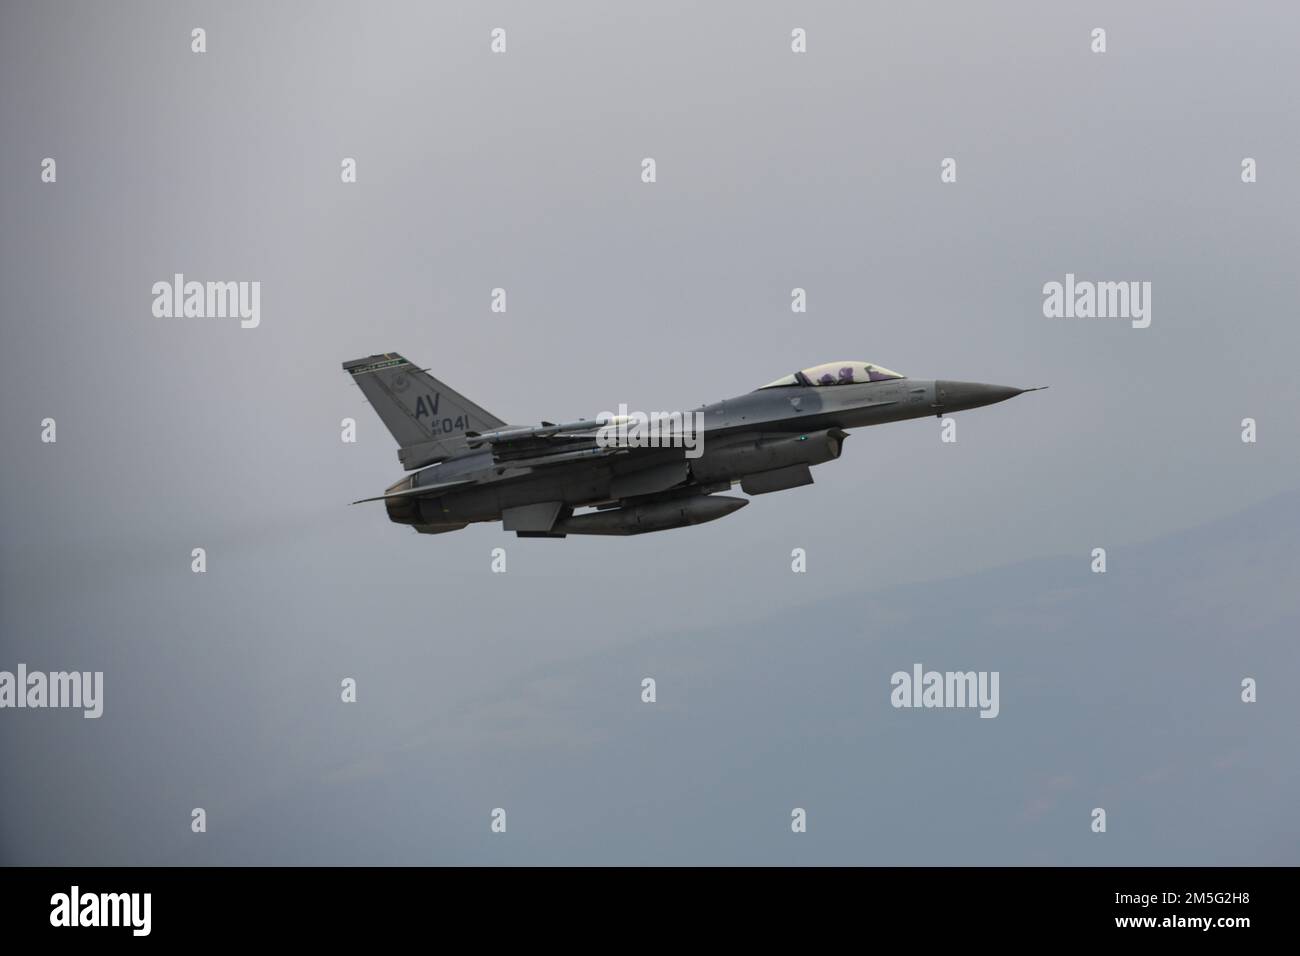 A ÉTATS-UNIS Le faucon de combat F-16C de la Force aérienne affecté à l'escadron de combat 555th prend son envol pour des opérations d'emploi au combat Agile en Croatie à la base aérienne d'Aviano, en Italie, au 16 mars 2022. La 31st Fighter Wing Wing exécutera des opérations de routine Agile combat Employment avec des alliés croates pendant ce vol. De telles missions renforcent la disponibilité nécessaire pour relever tout défi potentiel en Europe du Sud-est. Banque D'Images